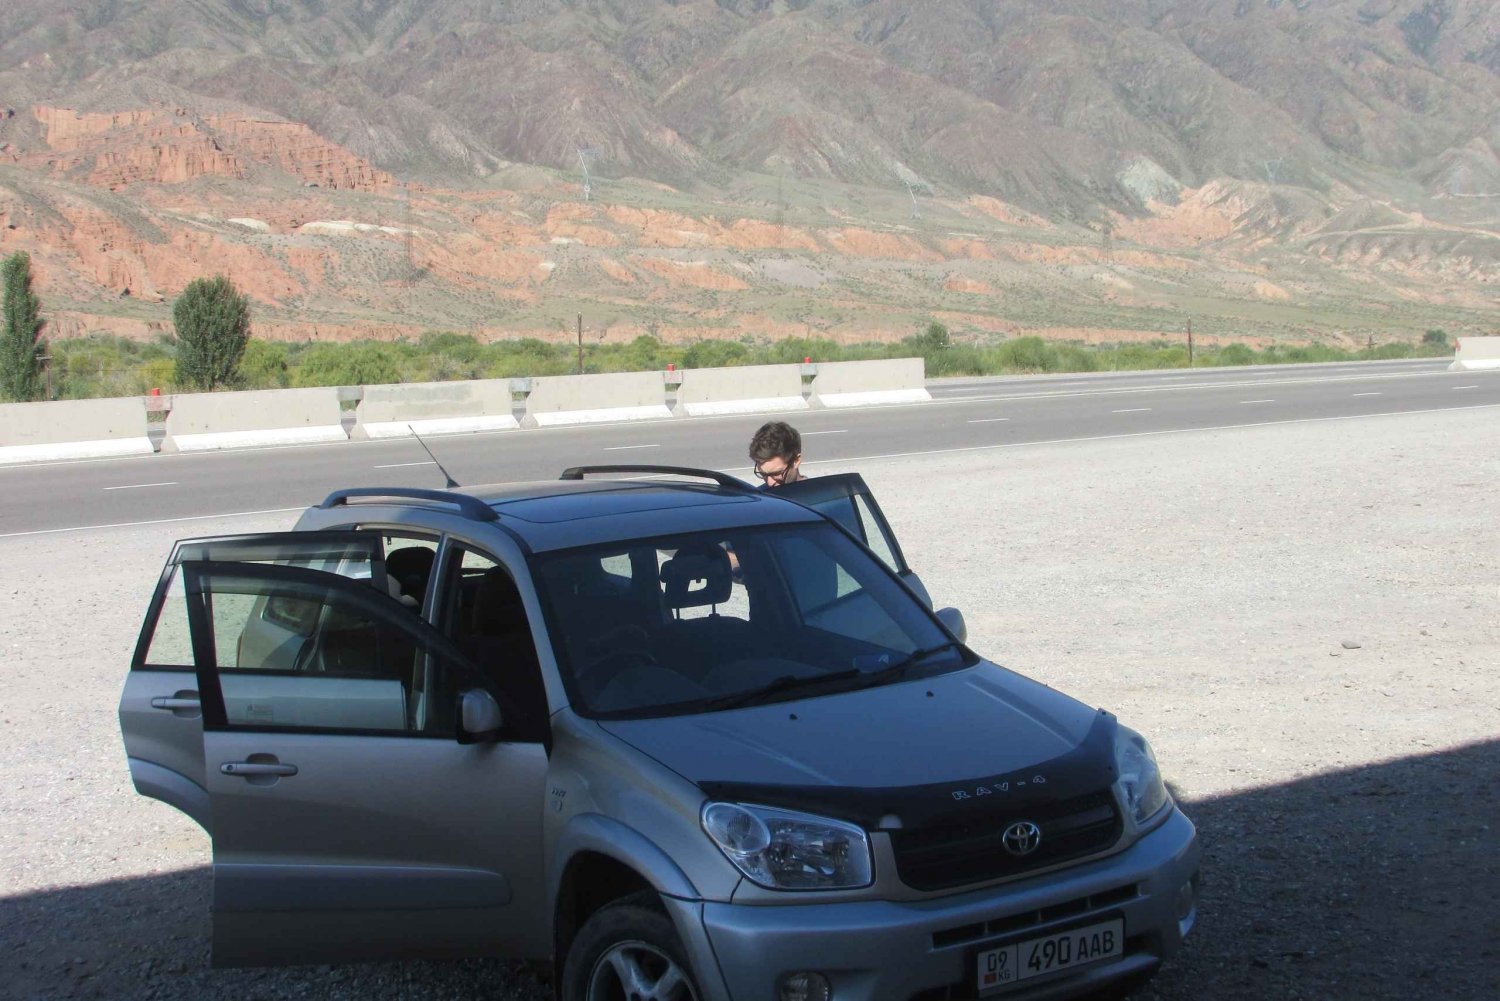 Kirgisia: Ratsastus, vaellus ja automatkat